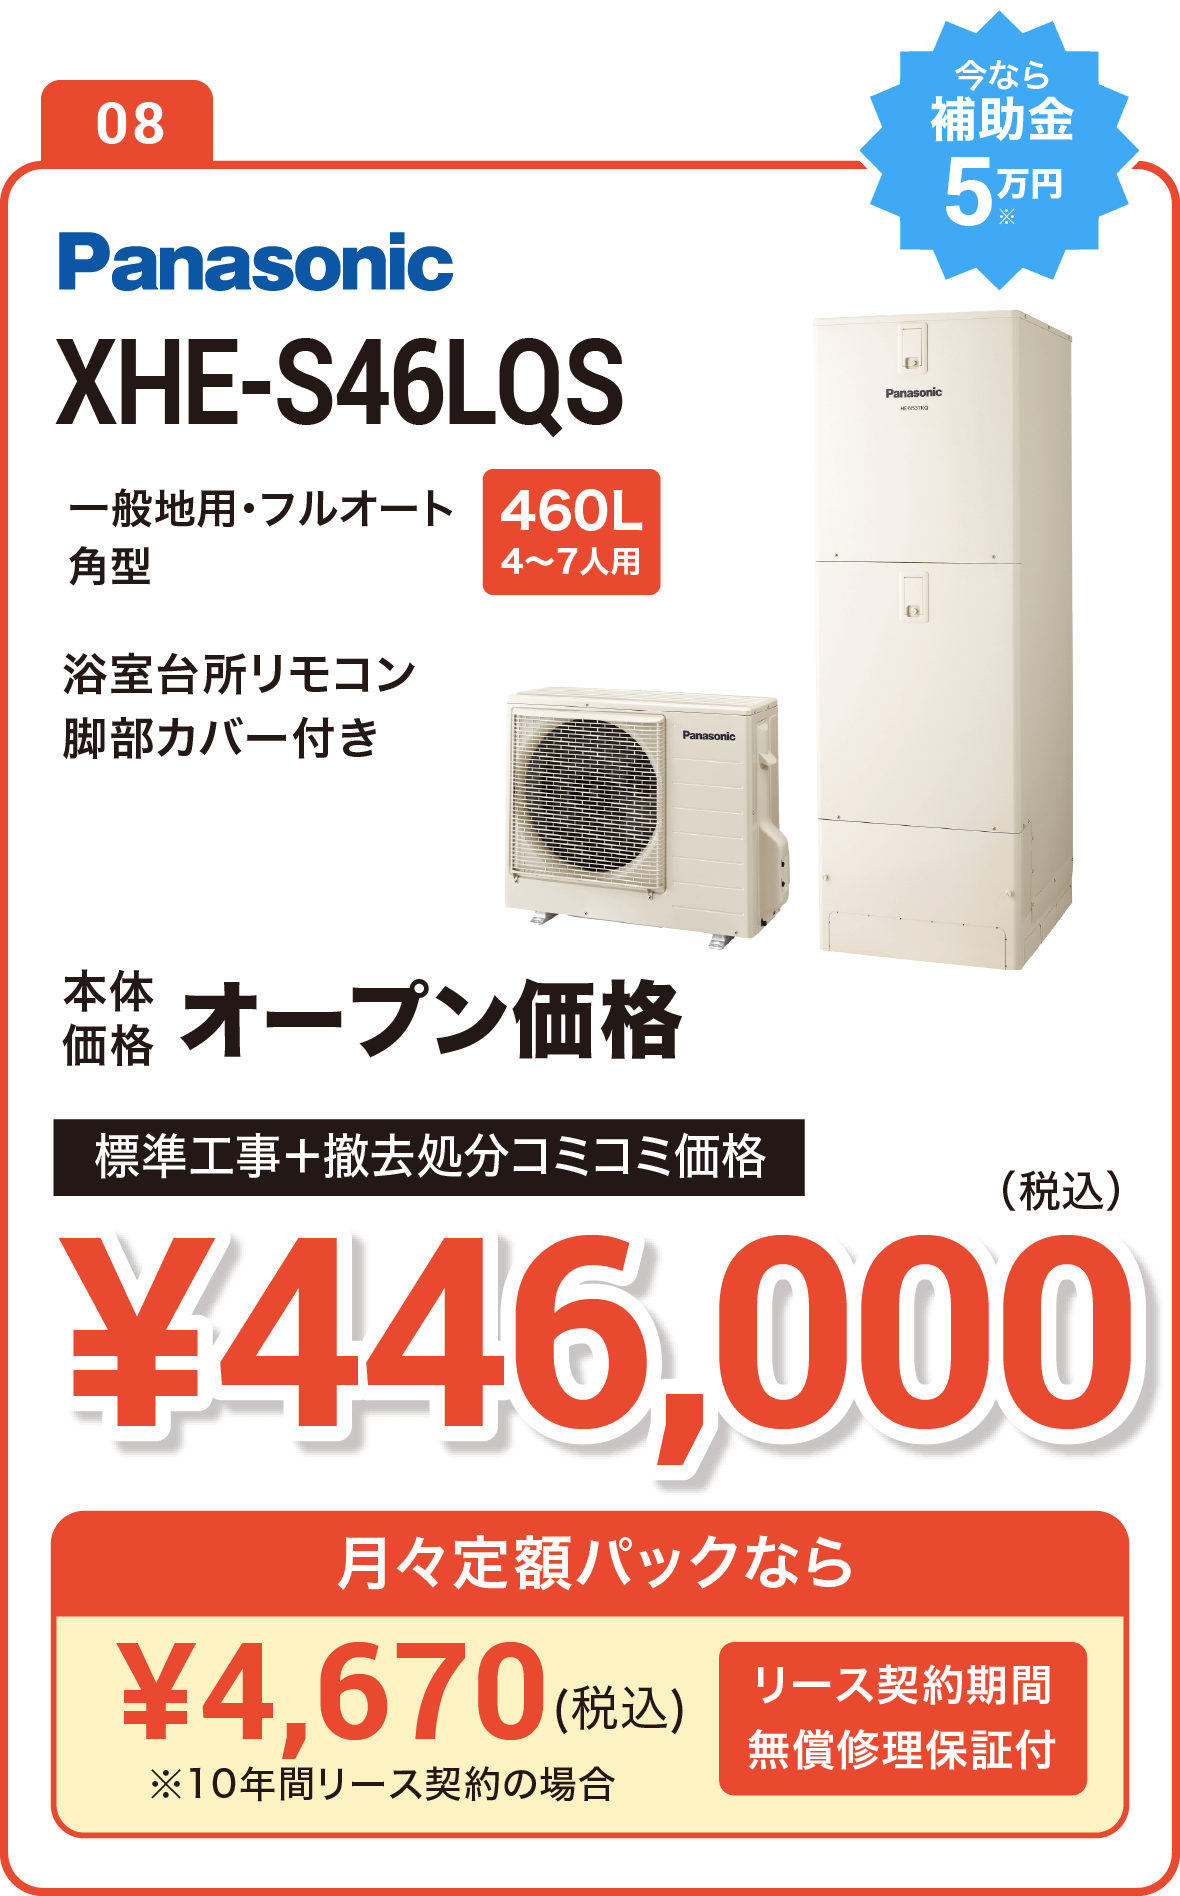 【今なら補助金10万円】Panasonic XHE-SU46LQS 460L(4～7人用) 標準工事＋撤去処分コミコミ価格で実質で実質410,000円（税込）、月々定額パックなら5,500円（税込）